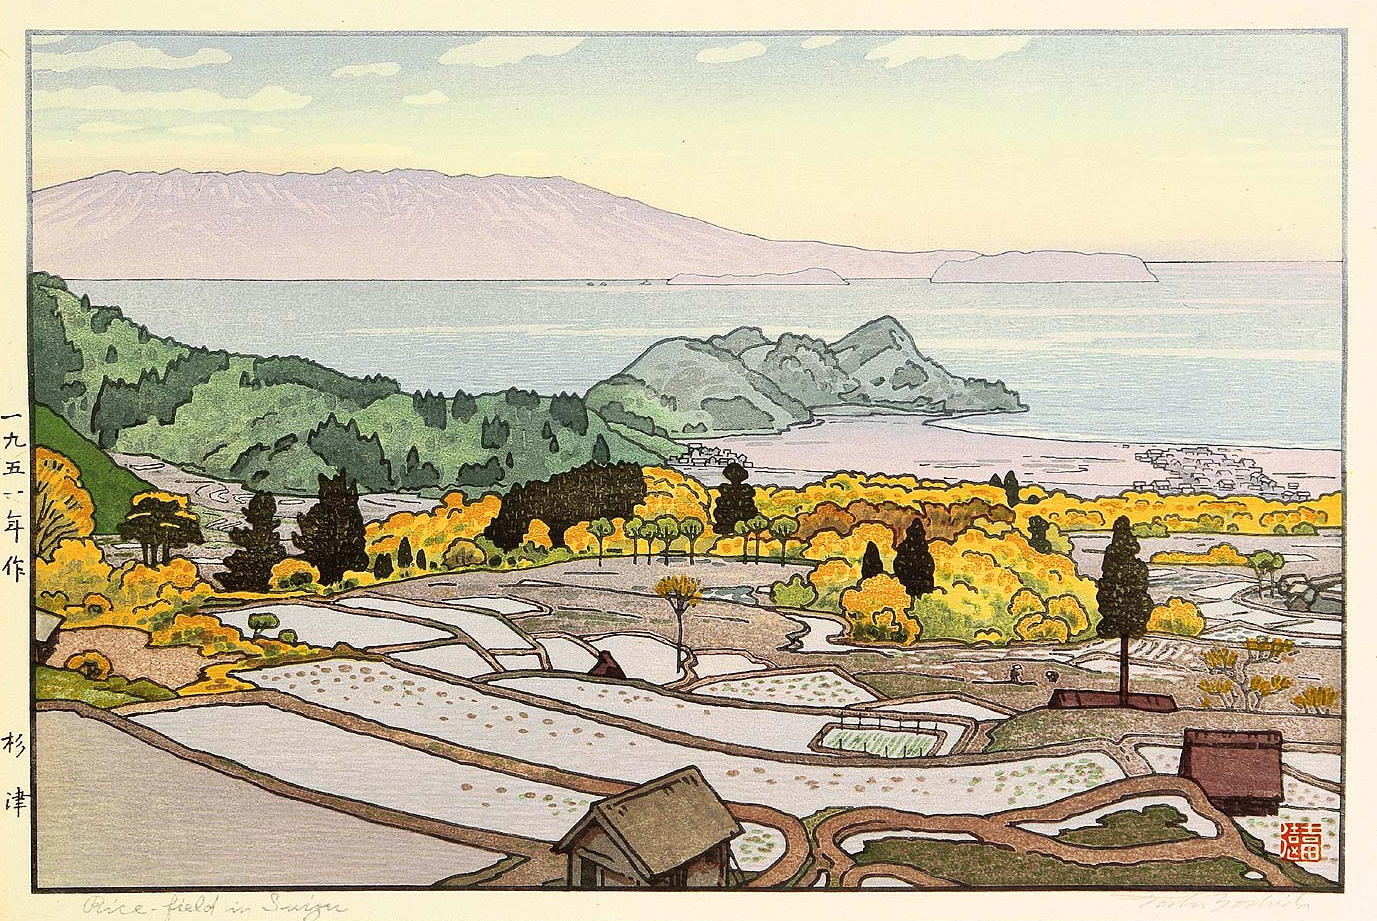 Toshi Yoshida “Rice-field in Suizu” 1951 woodblock print